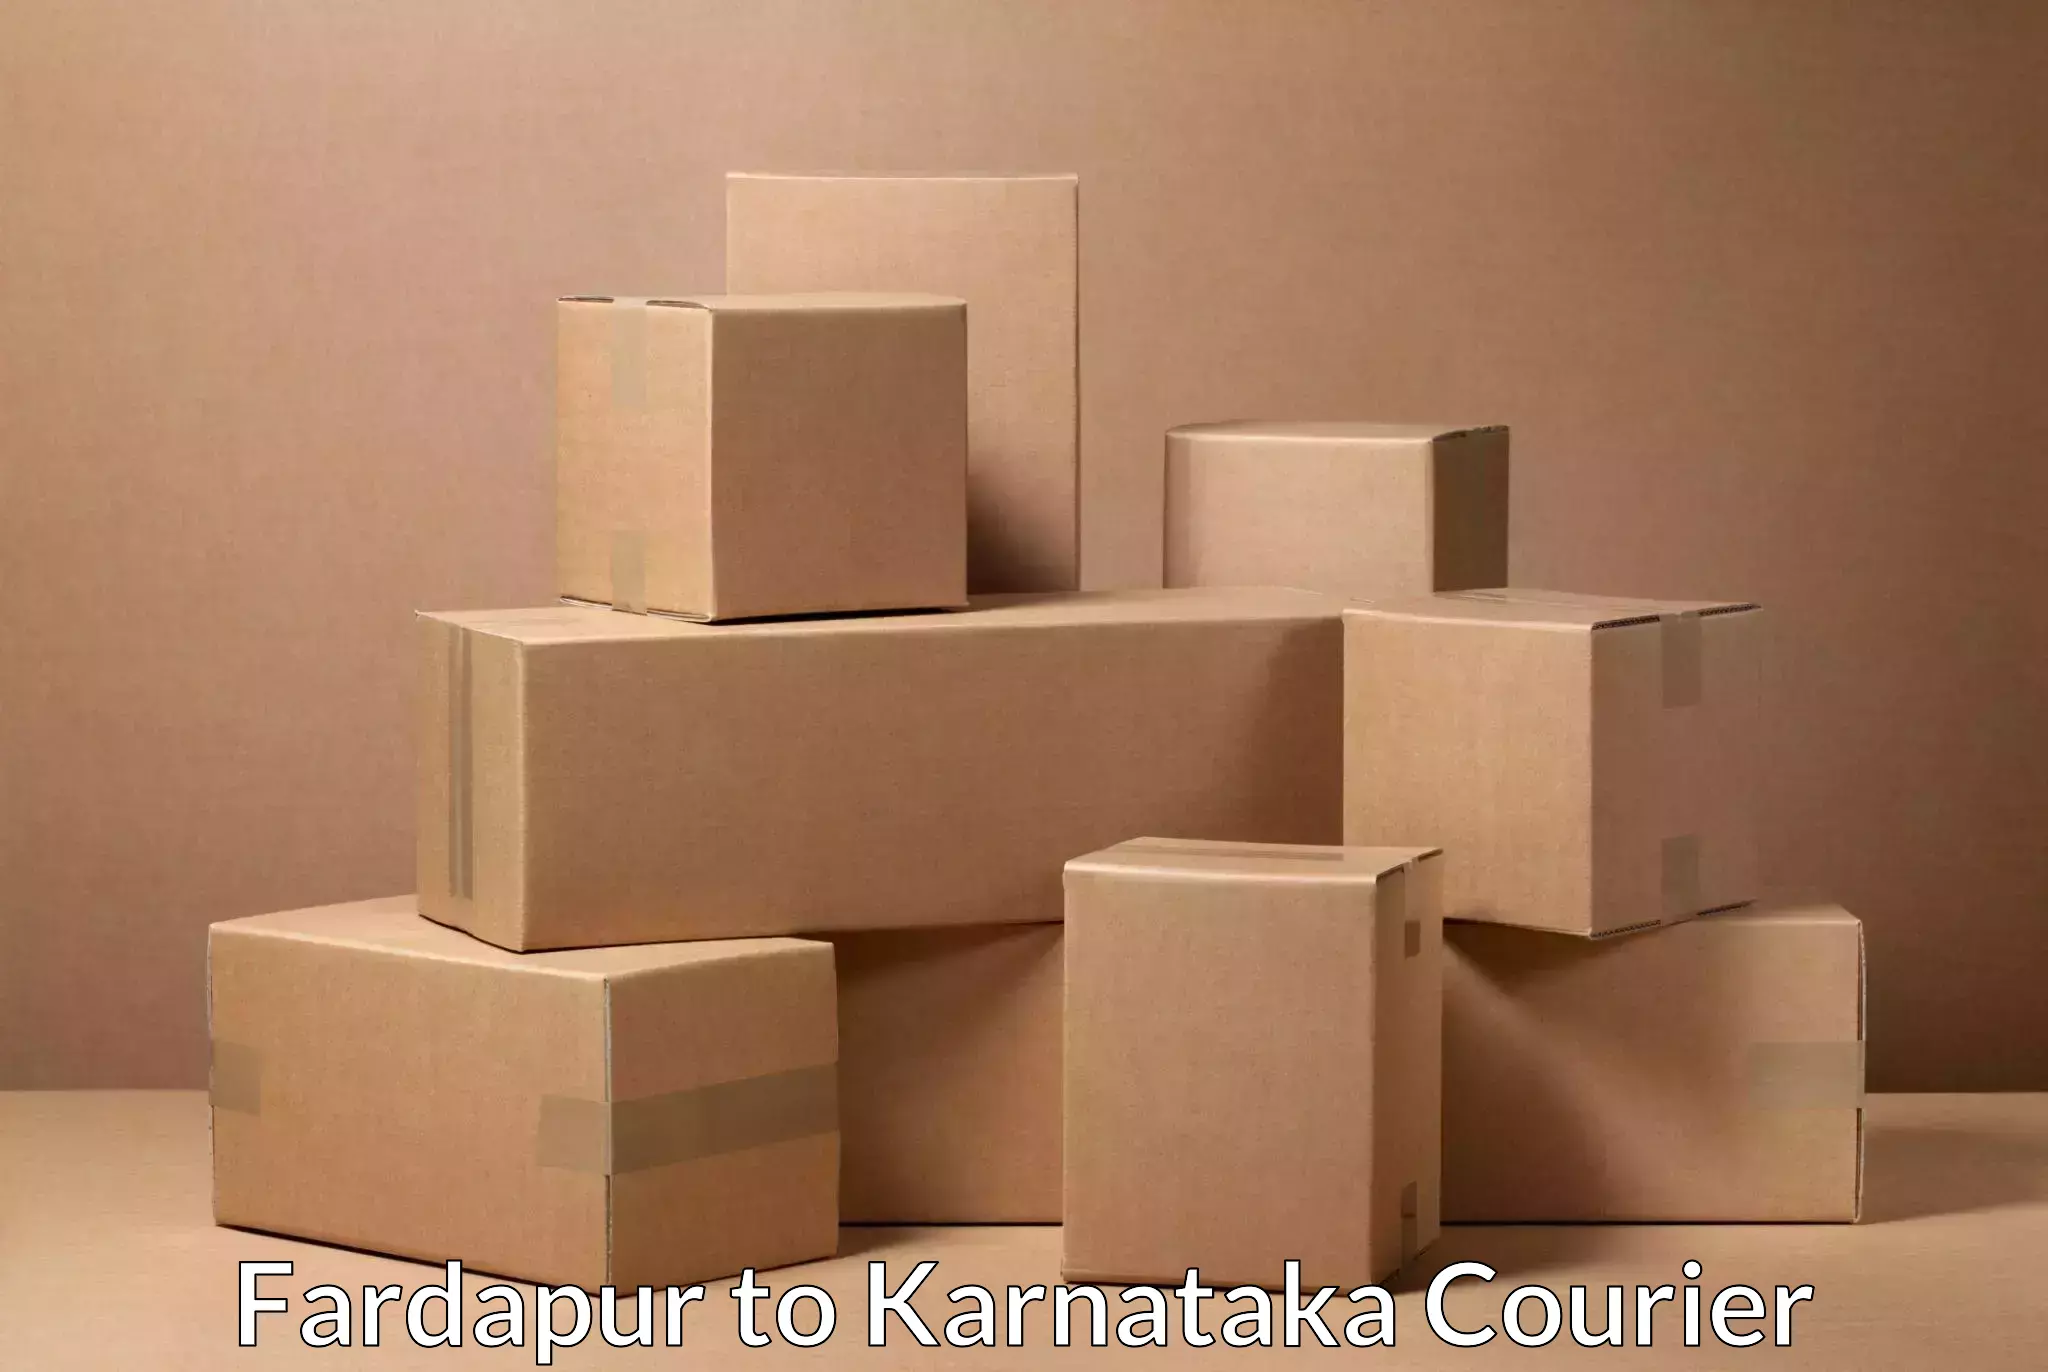 Express package handling Fardapur to Koppa